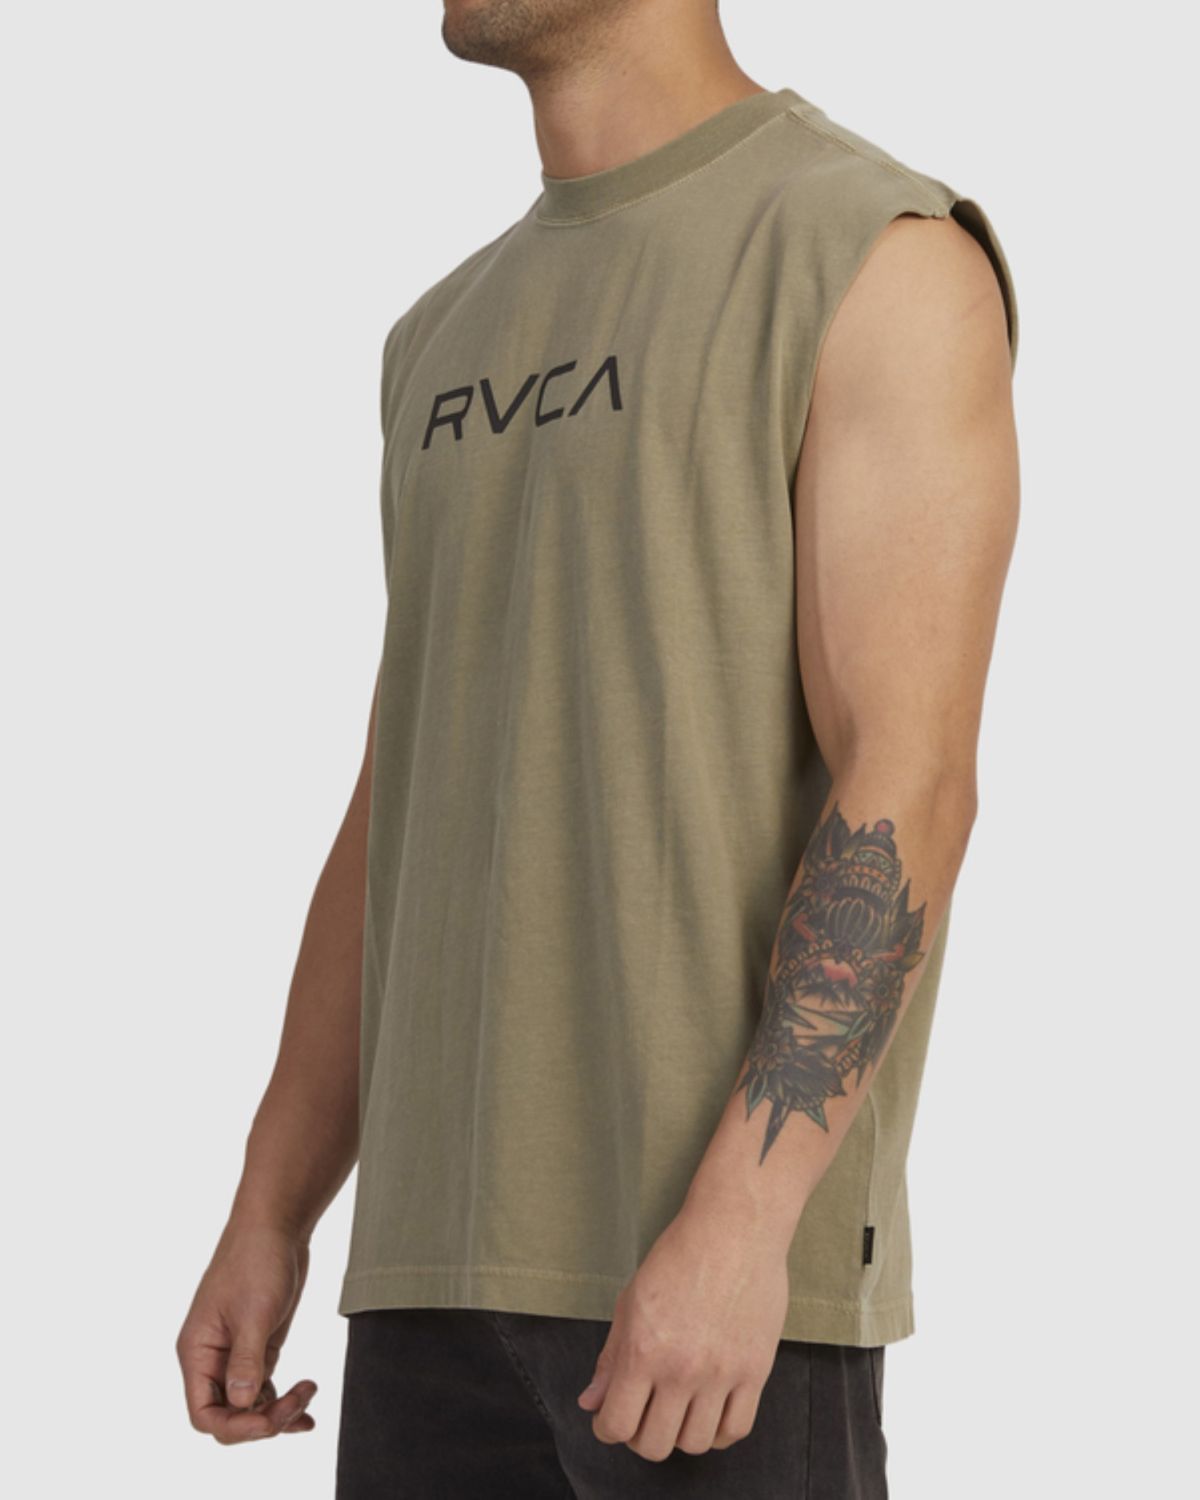  גופיית ווש עם הדפס לוגו של RVCA